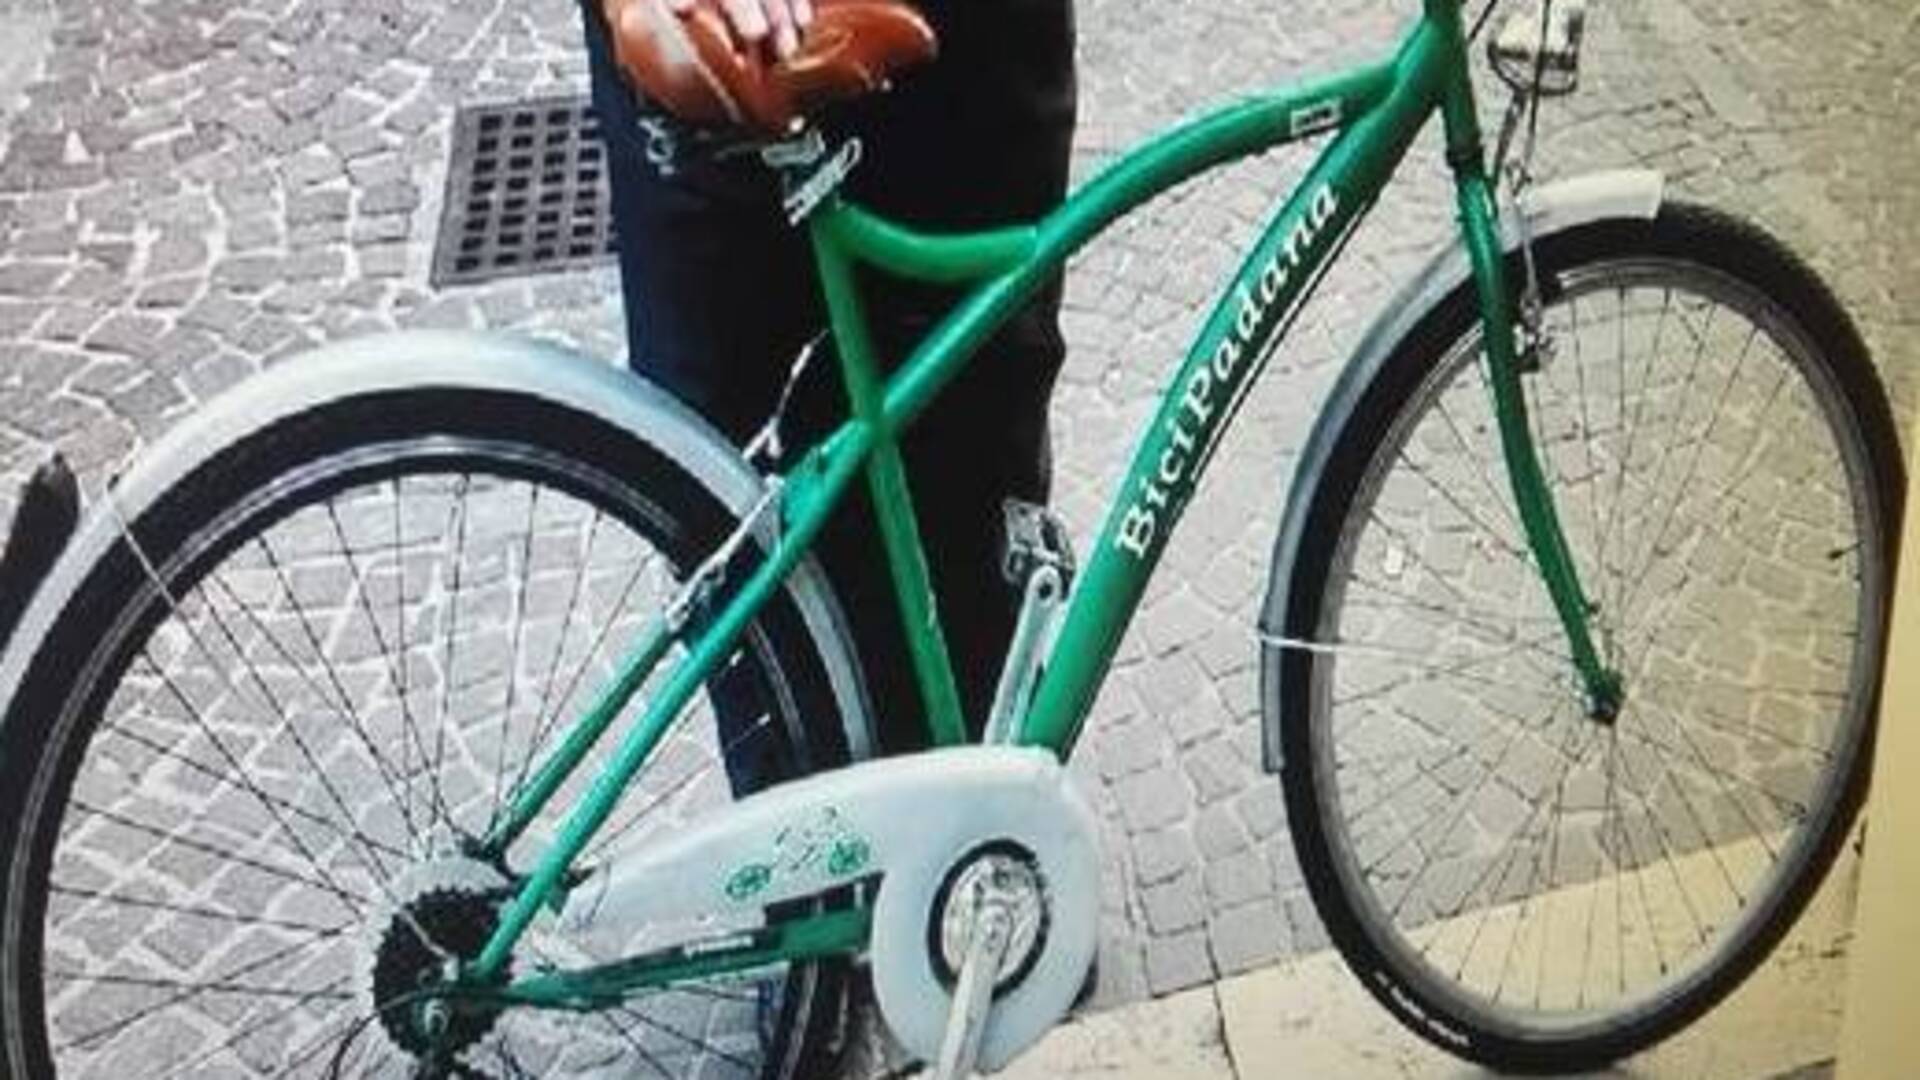 Ieri a Saronno: rubata la bici padana. Petizione per salvare la parrocchia Santuario Comune pubblica sui social le discariche abusive